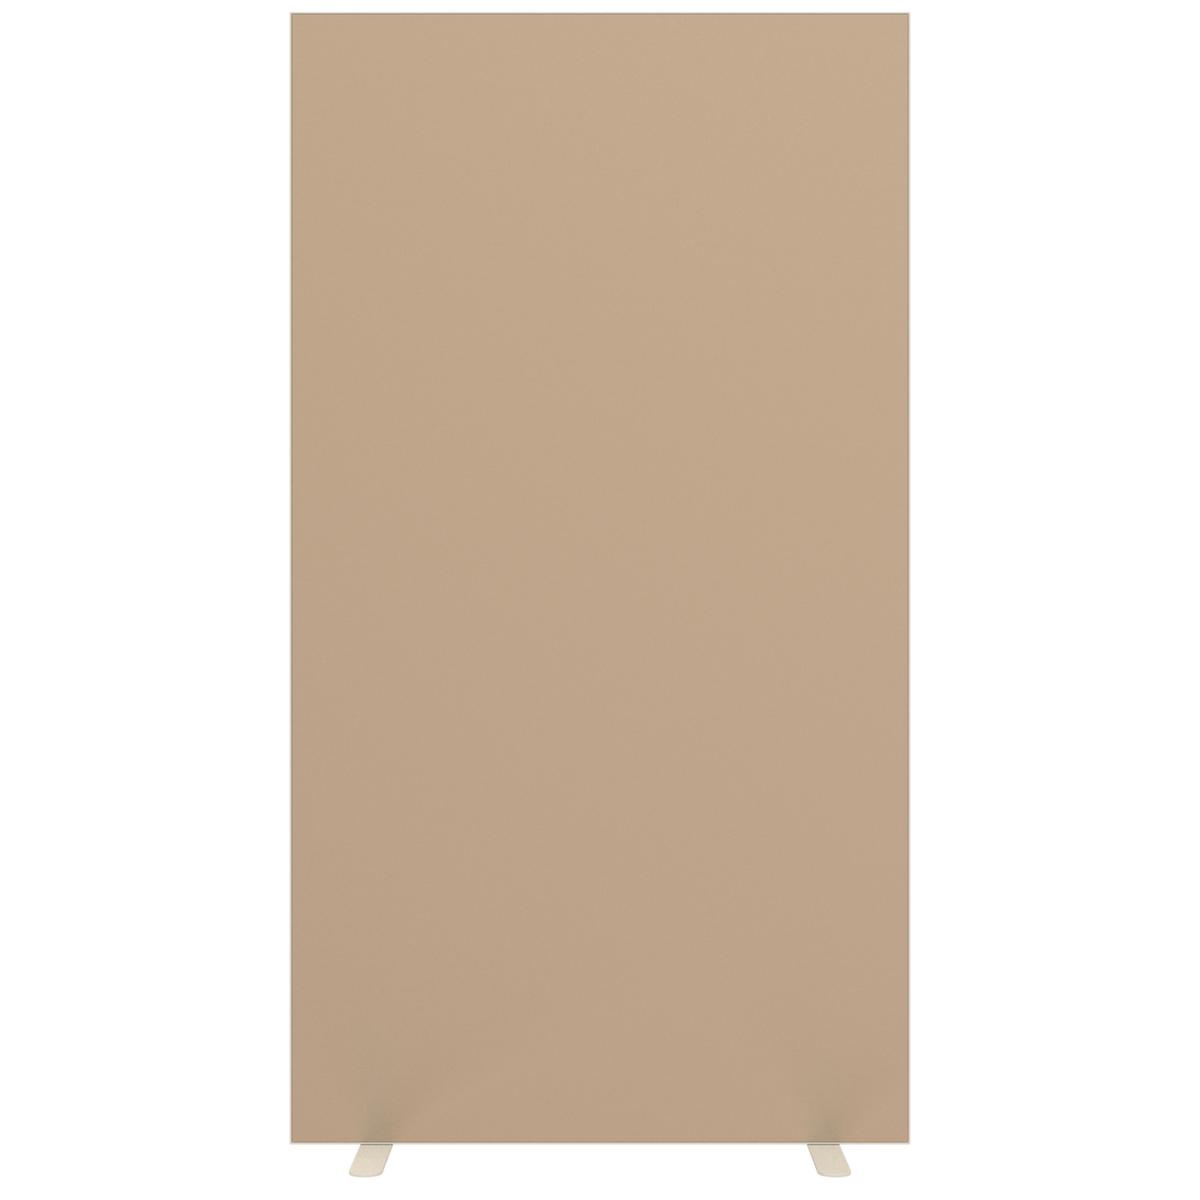 Paperflow Trennwand mit beidseitigem Stoffbezug, Höhe x Breite 1740 x 940 mm, Wand sandfarben Standard 1 ZOOM